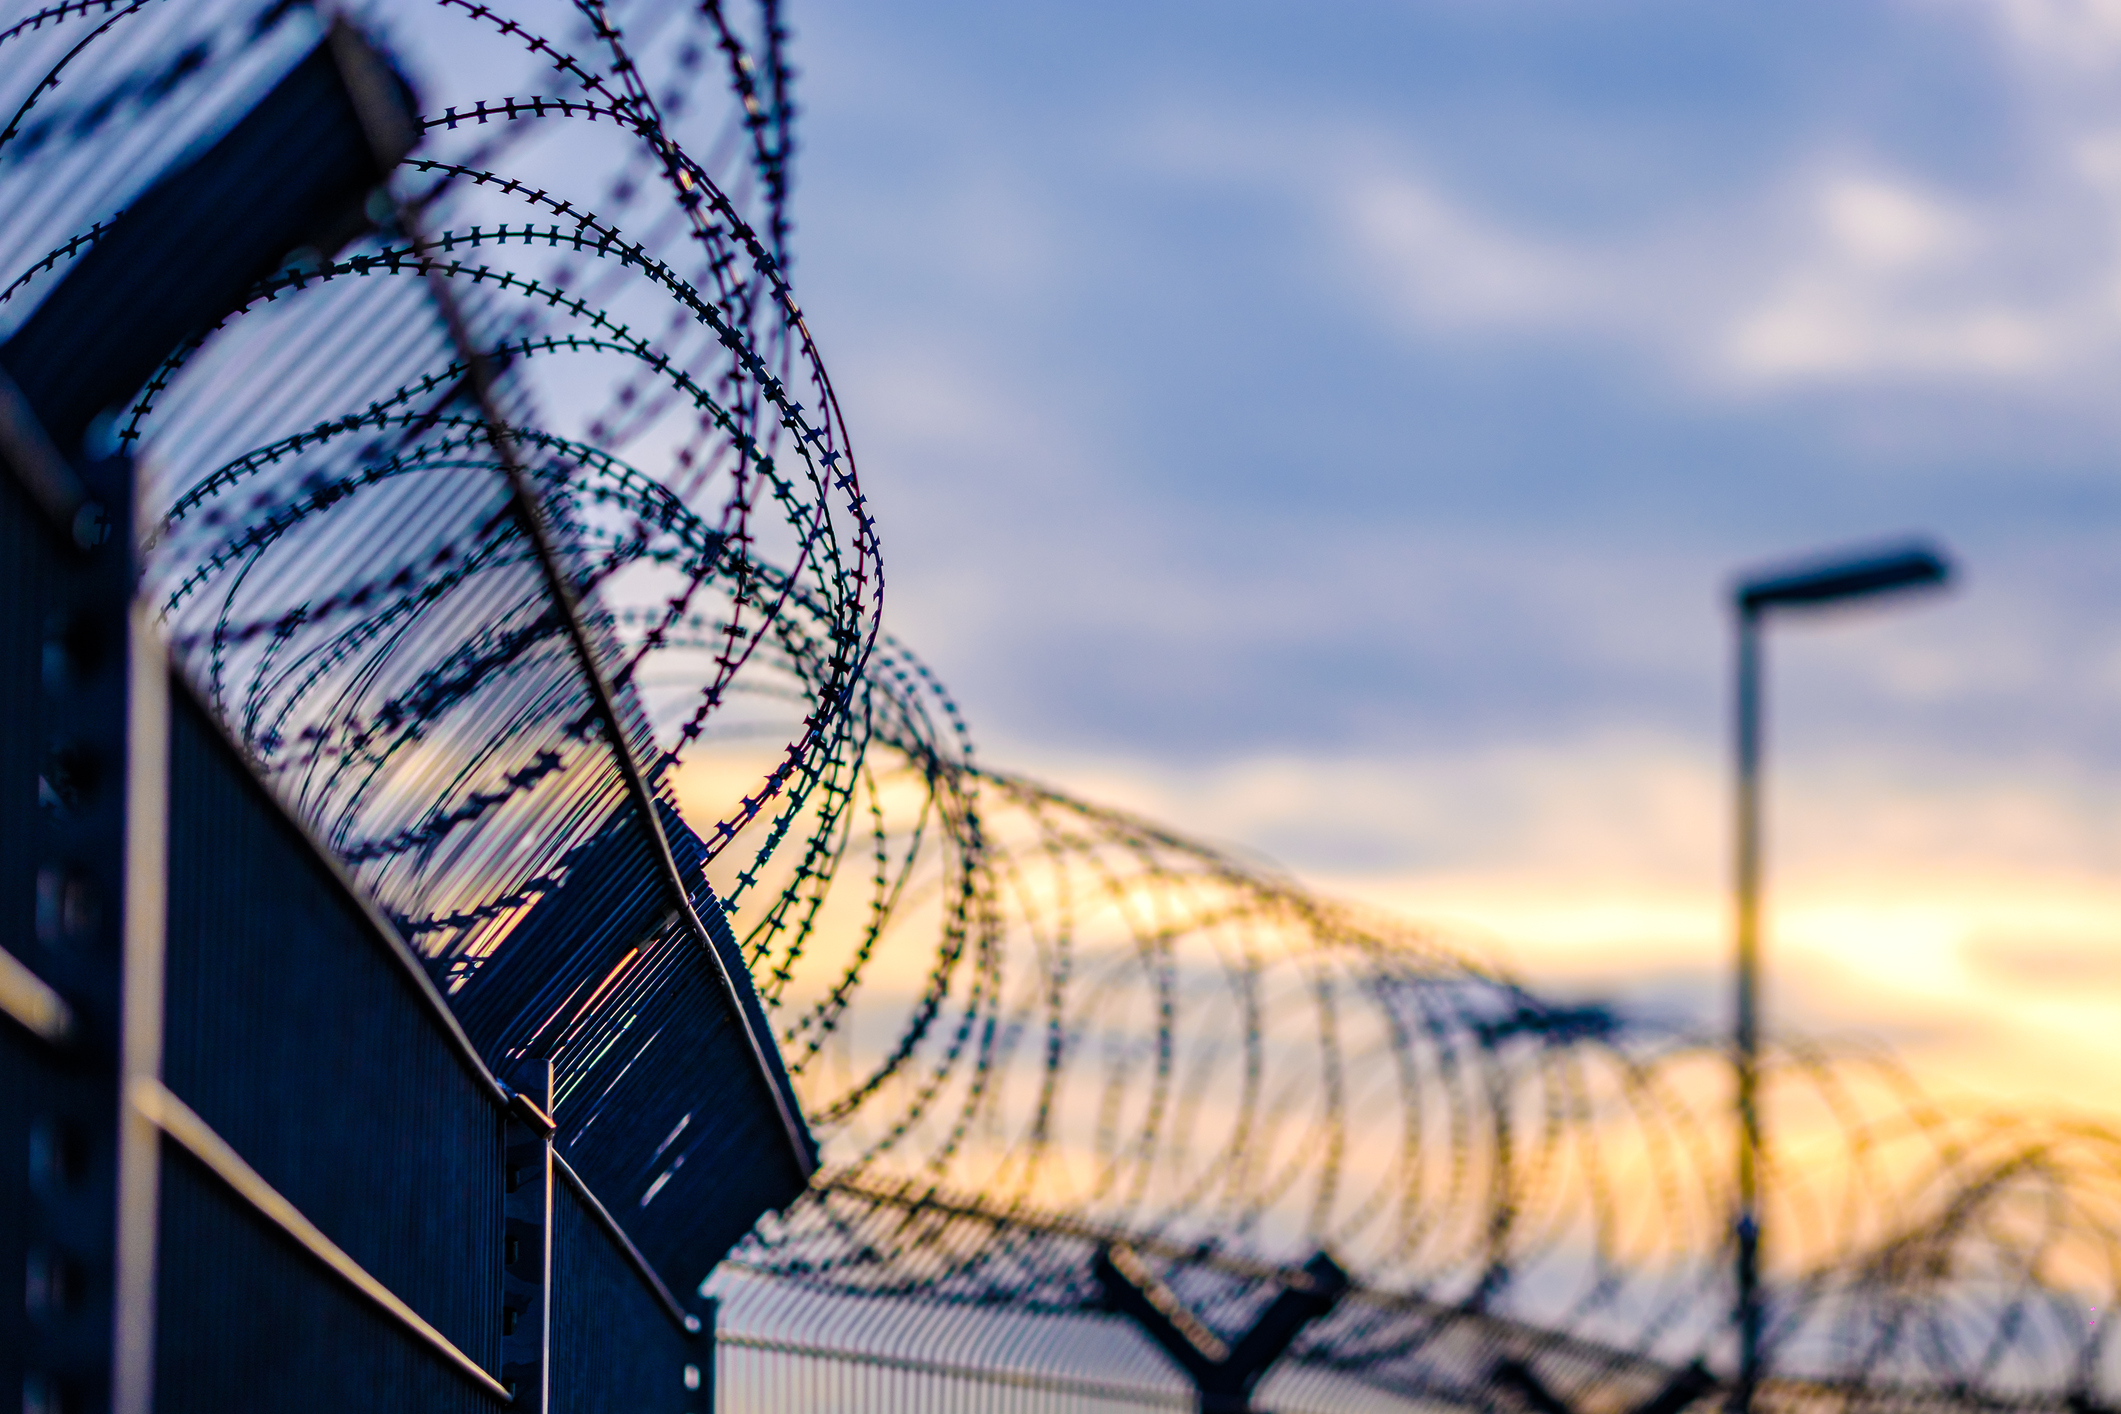 Prison chief: New Mexico unready to close private facilities